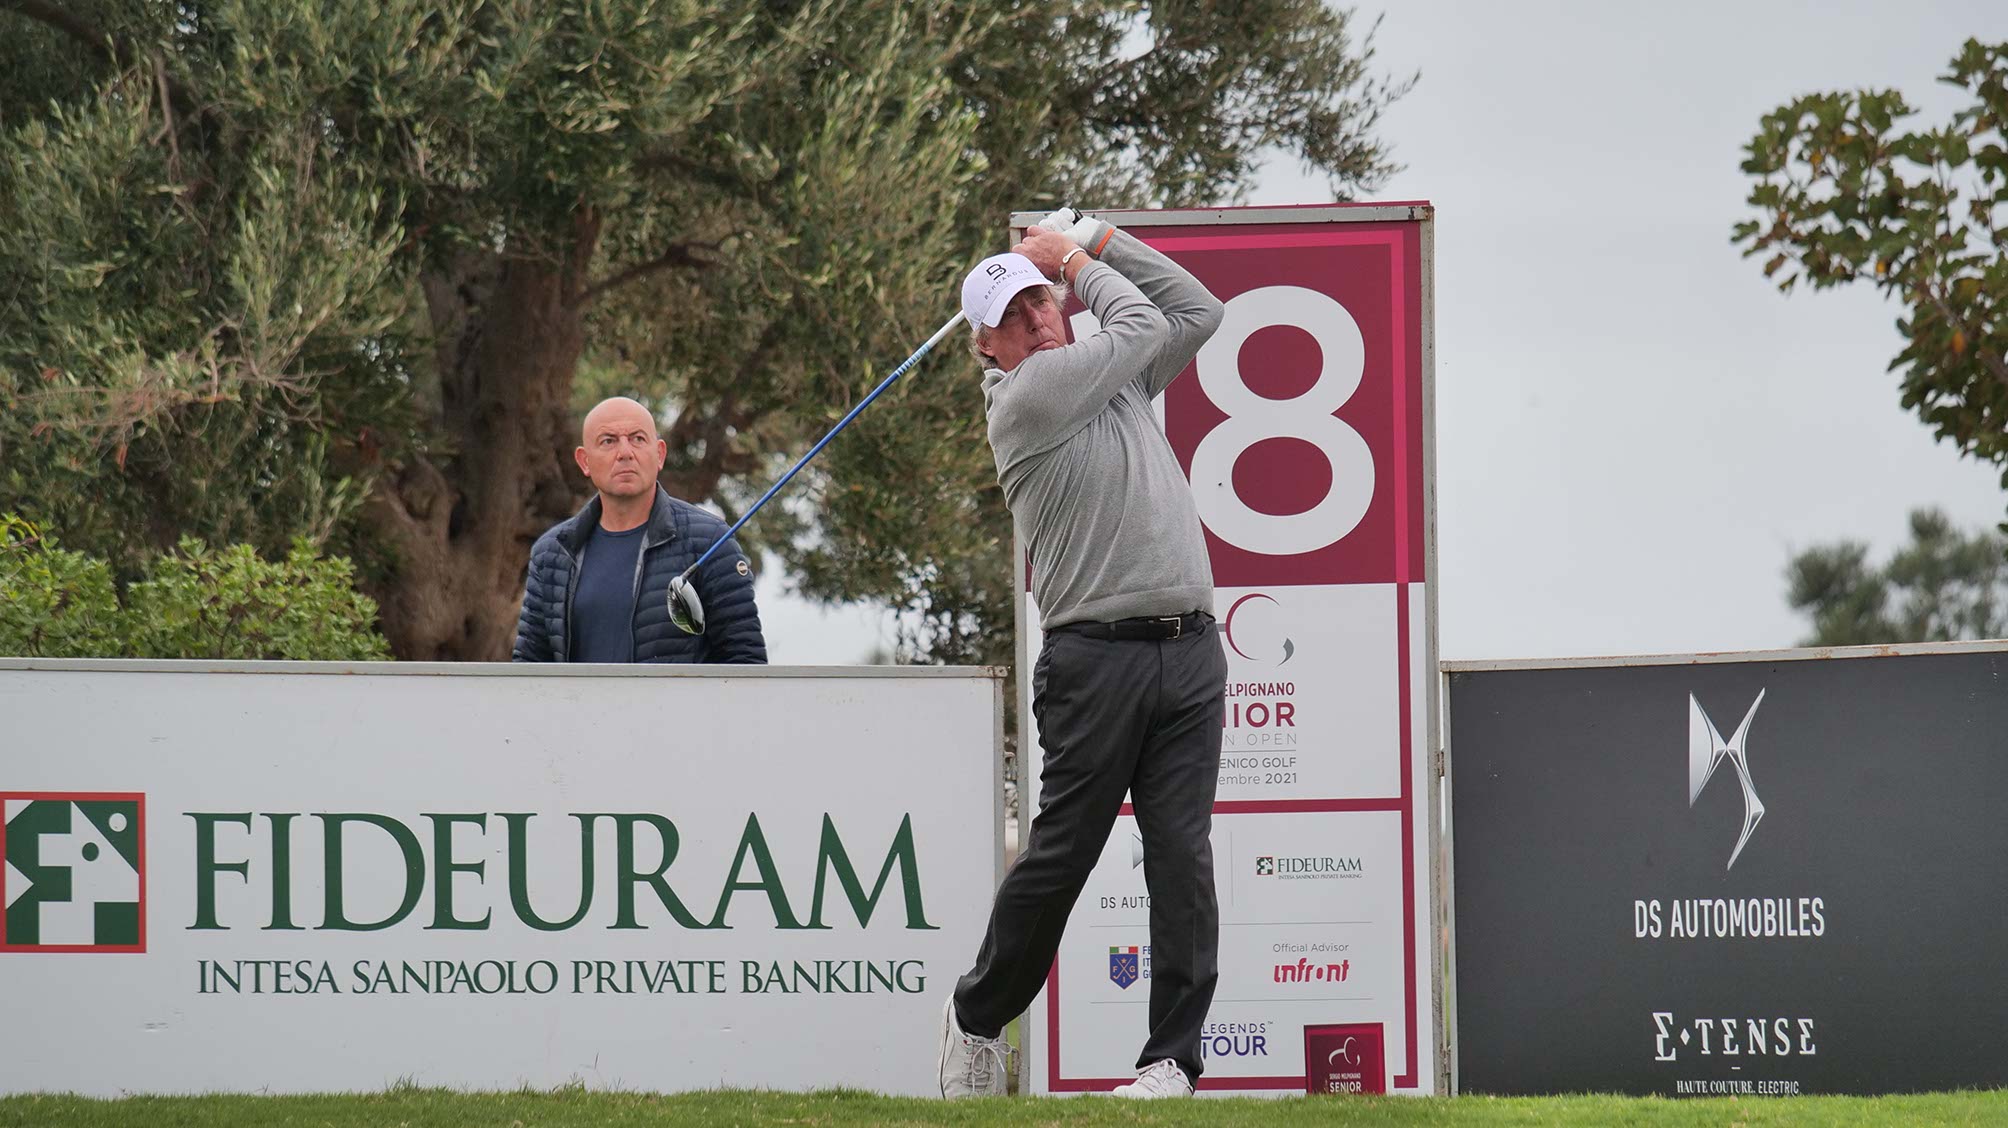 Sergio Melpignano Senior Italian Open: Round One Report